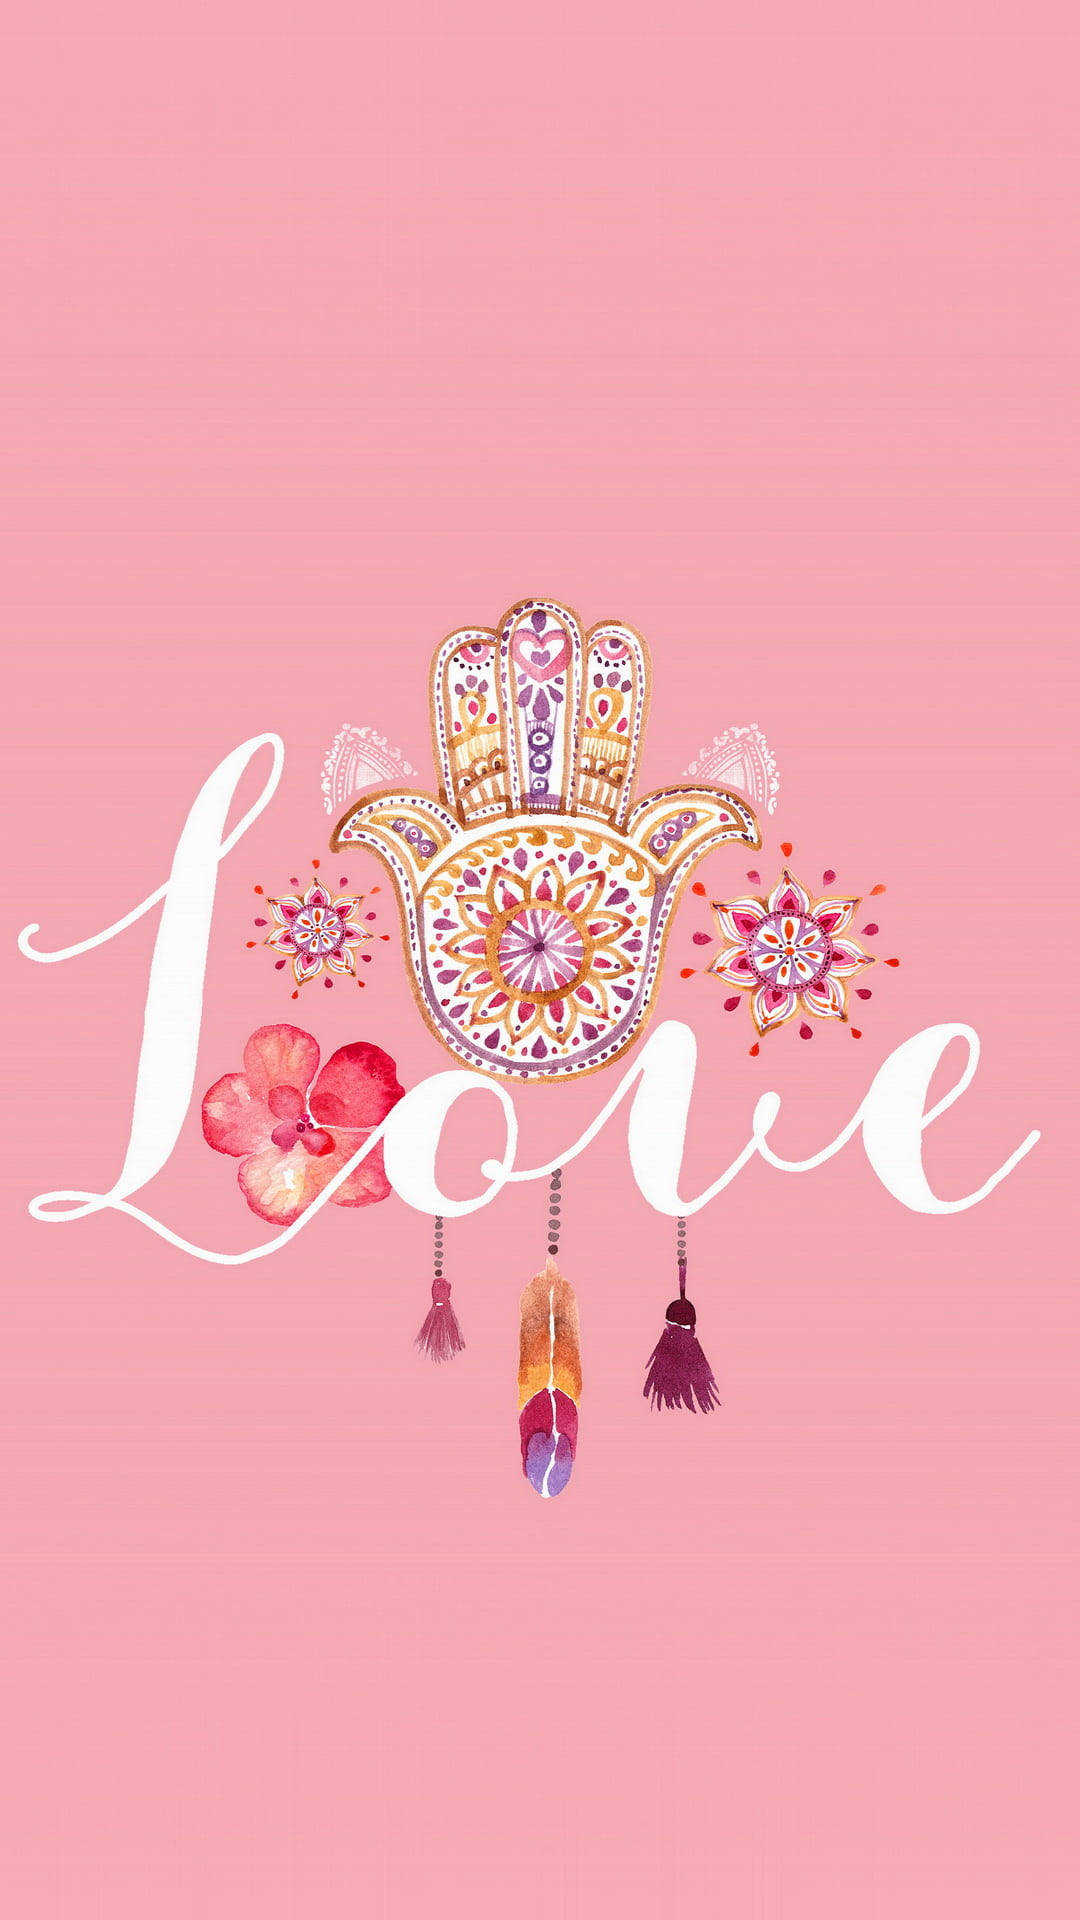 Aesthetic Boho Pink Love Wallpaper